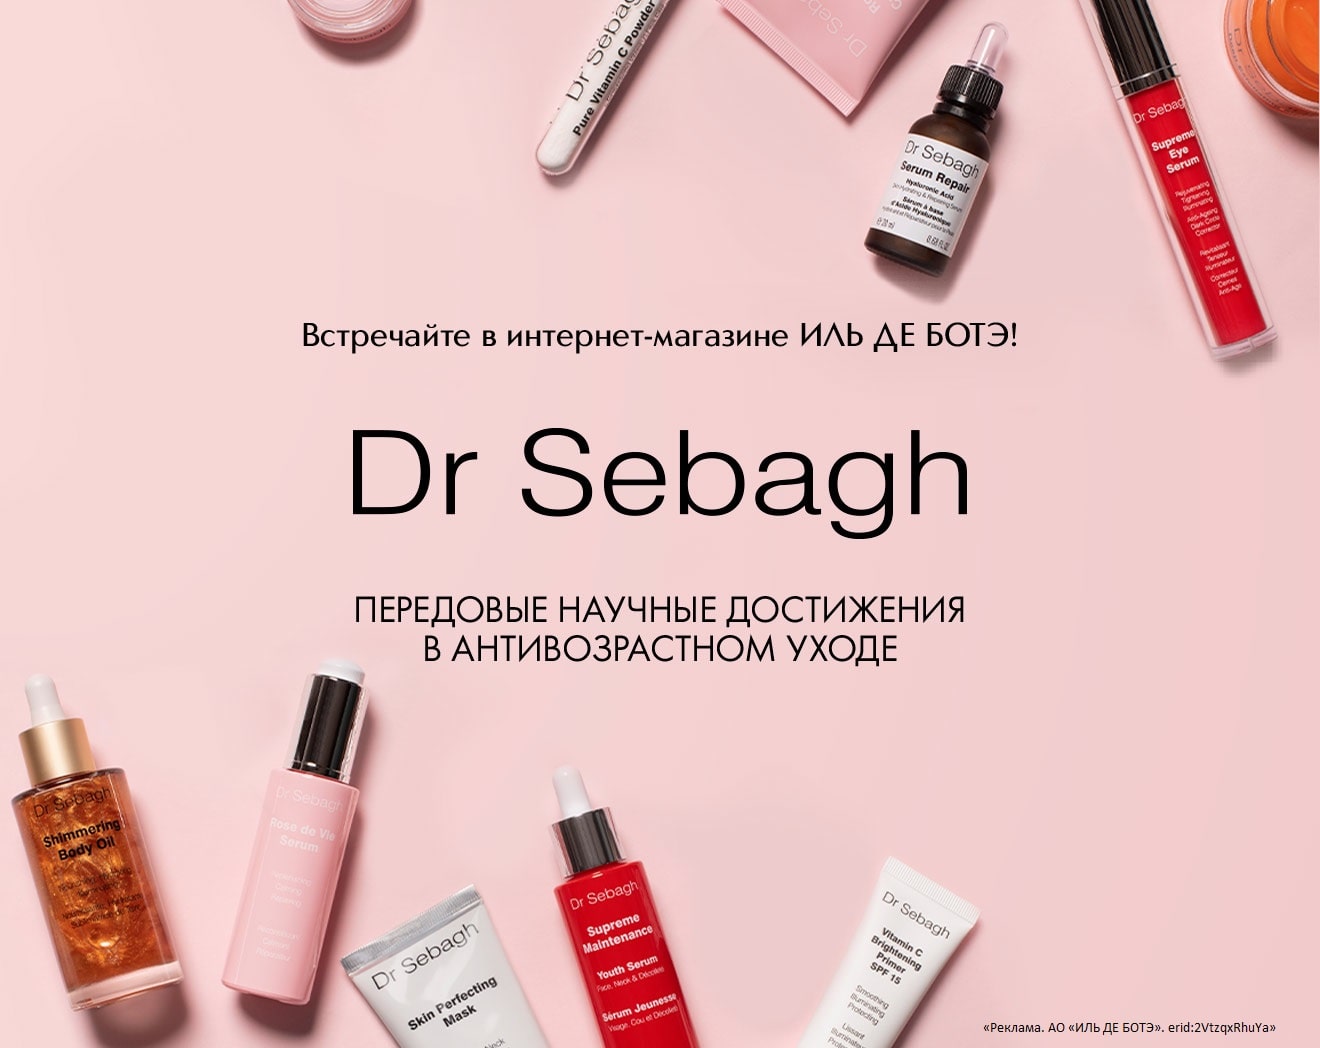 Встречайте новый бренд DR. SEBAGH в Интернет-магазине ИЛЬ ДЕ БОТЭ!